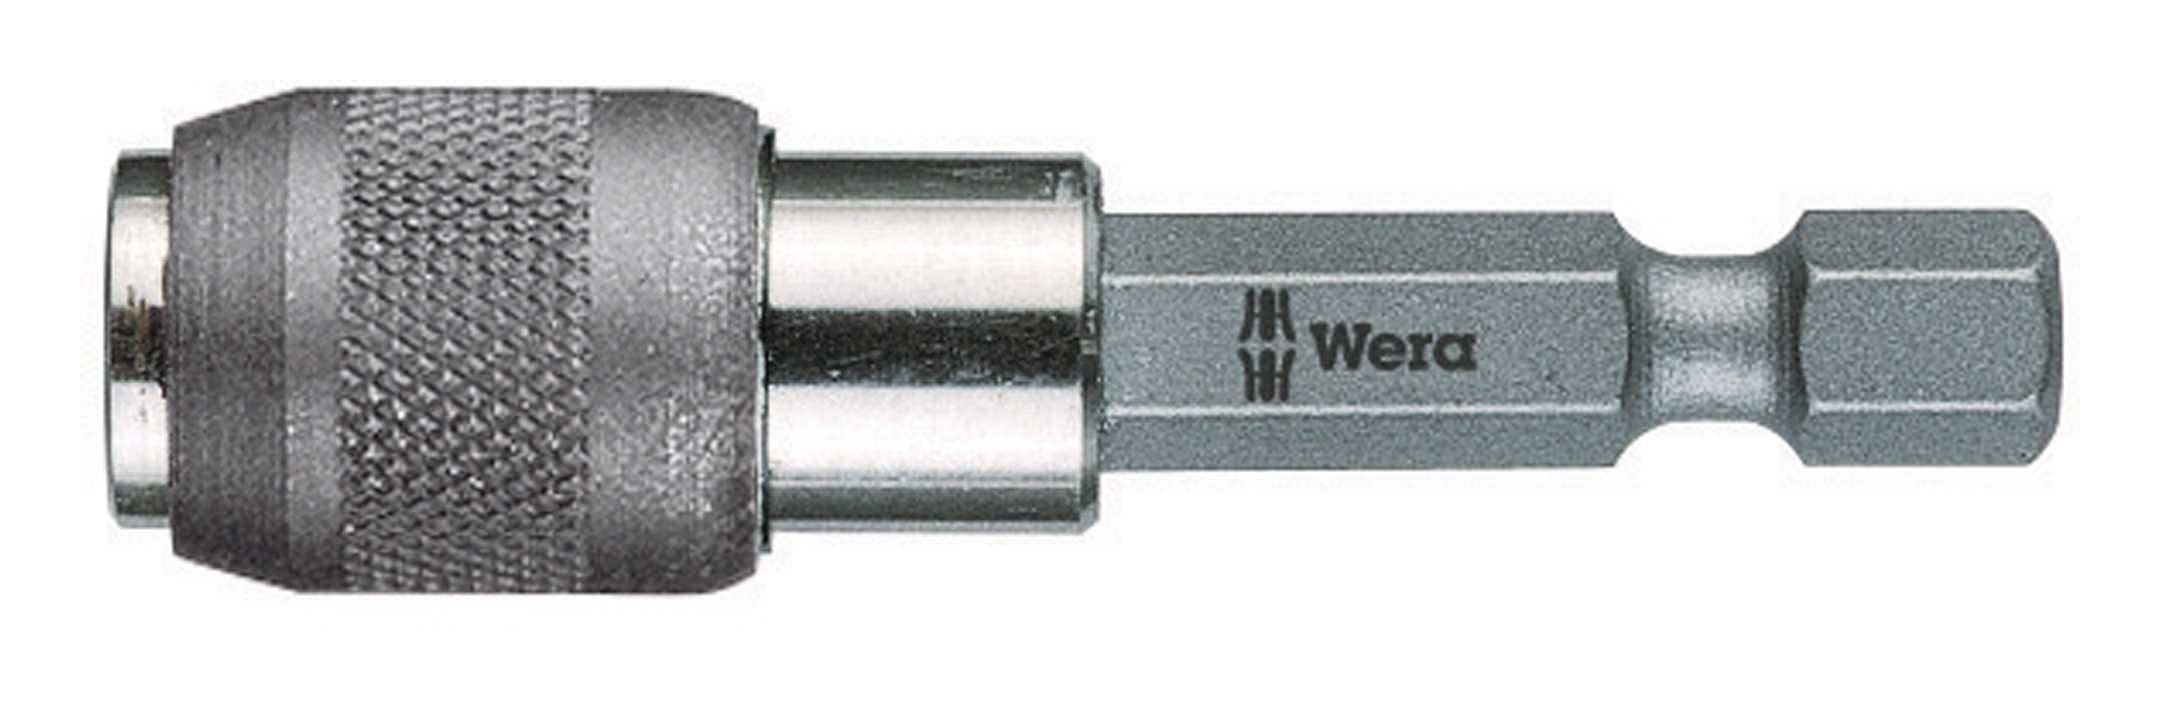 Wera Bithalter, Universalhalter mit Magnet Nr.895 / 4 / 1K